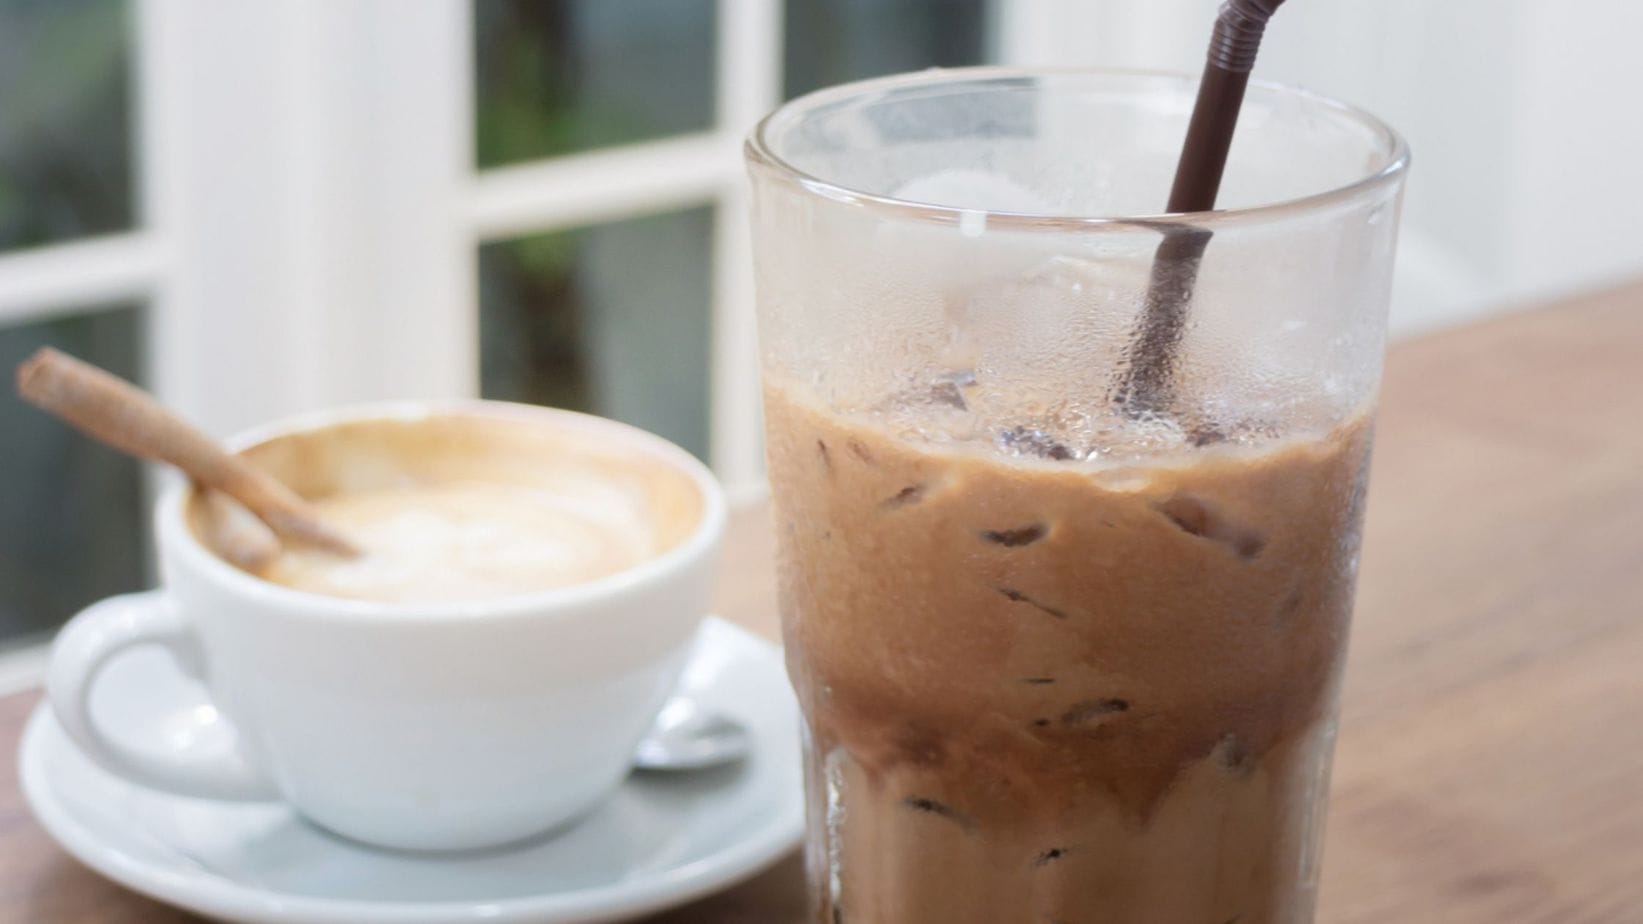 Café frío versus café caliente: ¿realmente importa la temperatura?